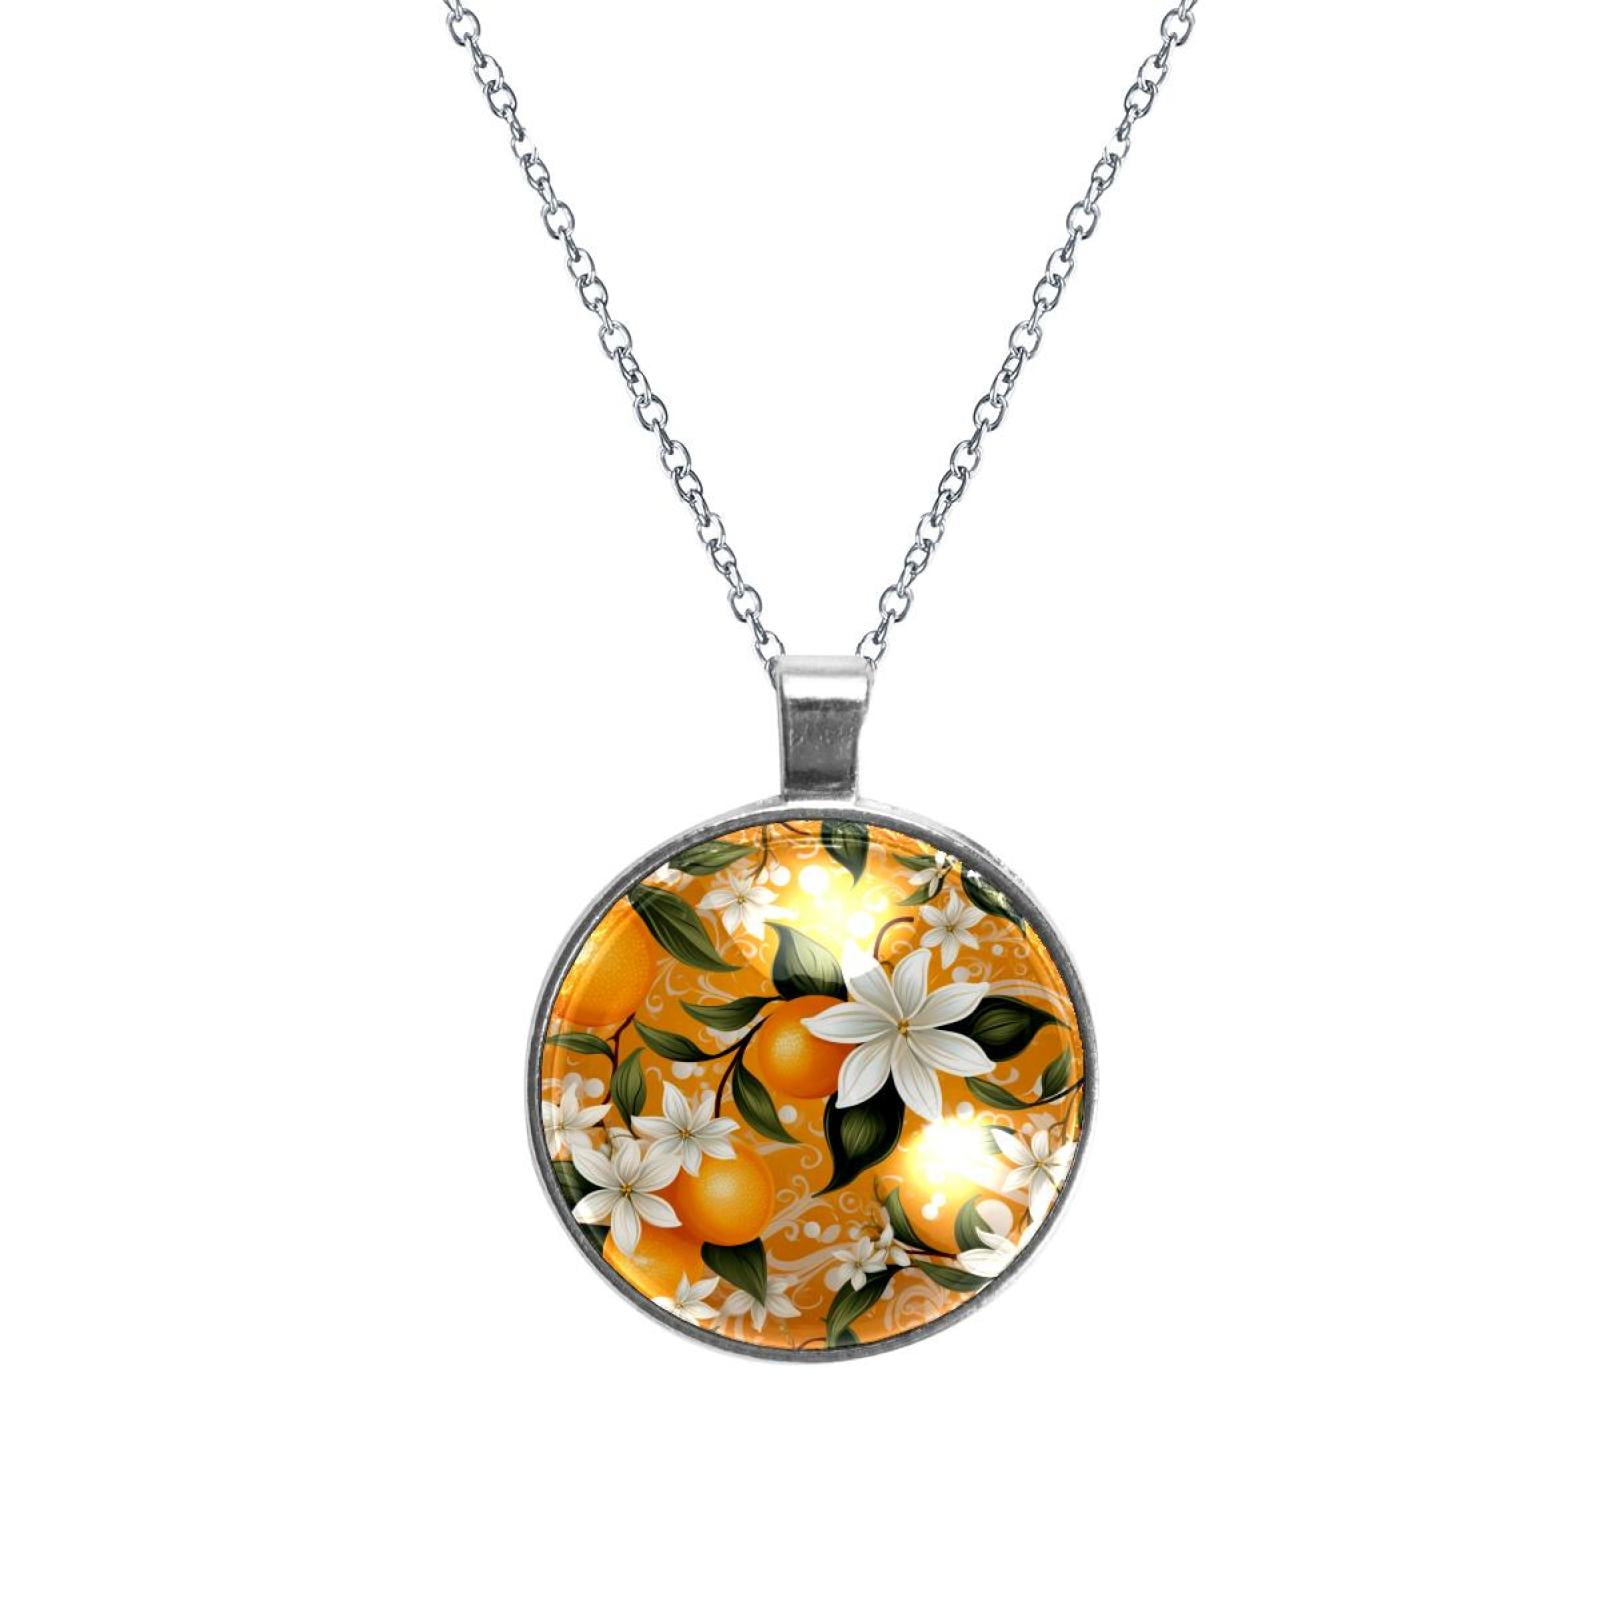 Tangerine Stunning Glass Design Circular Pendant Necklace - Unique ...